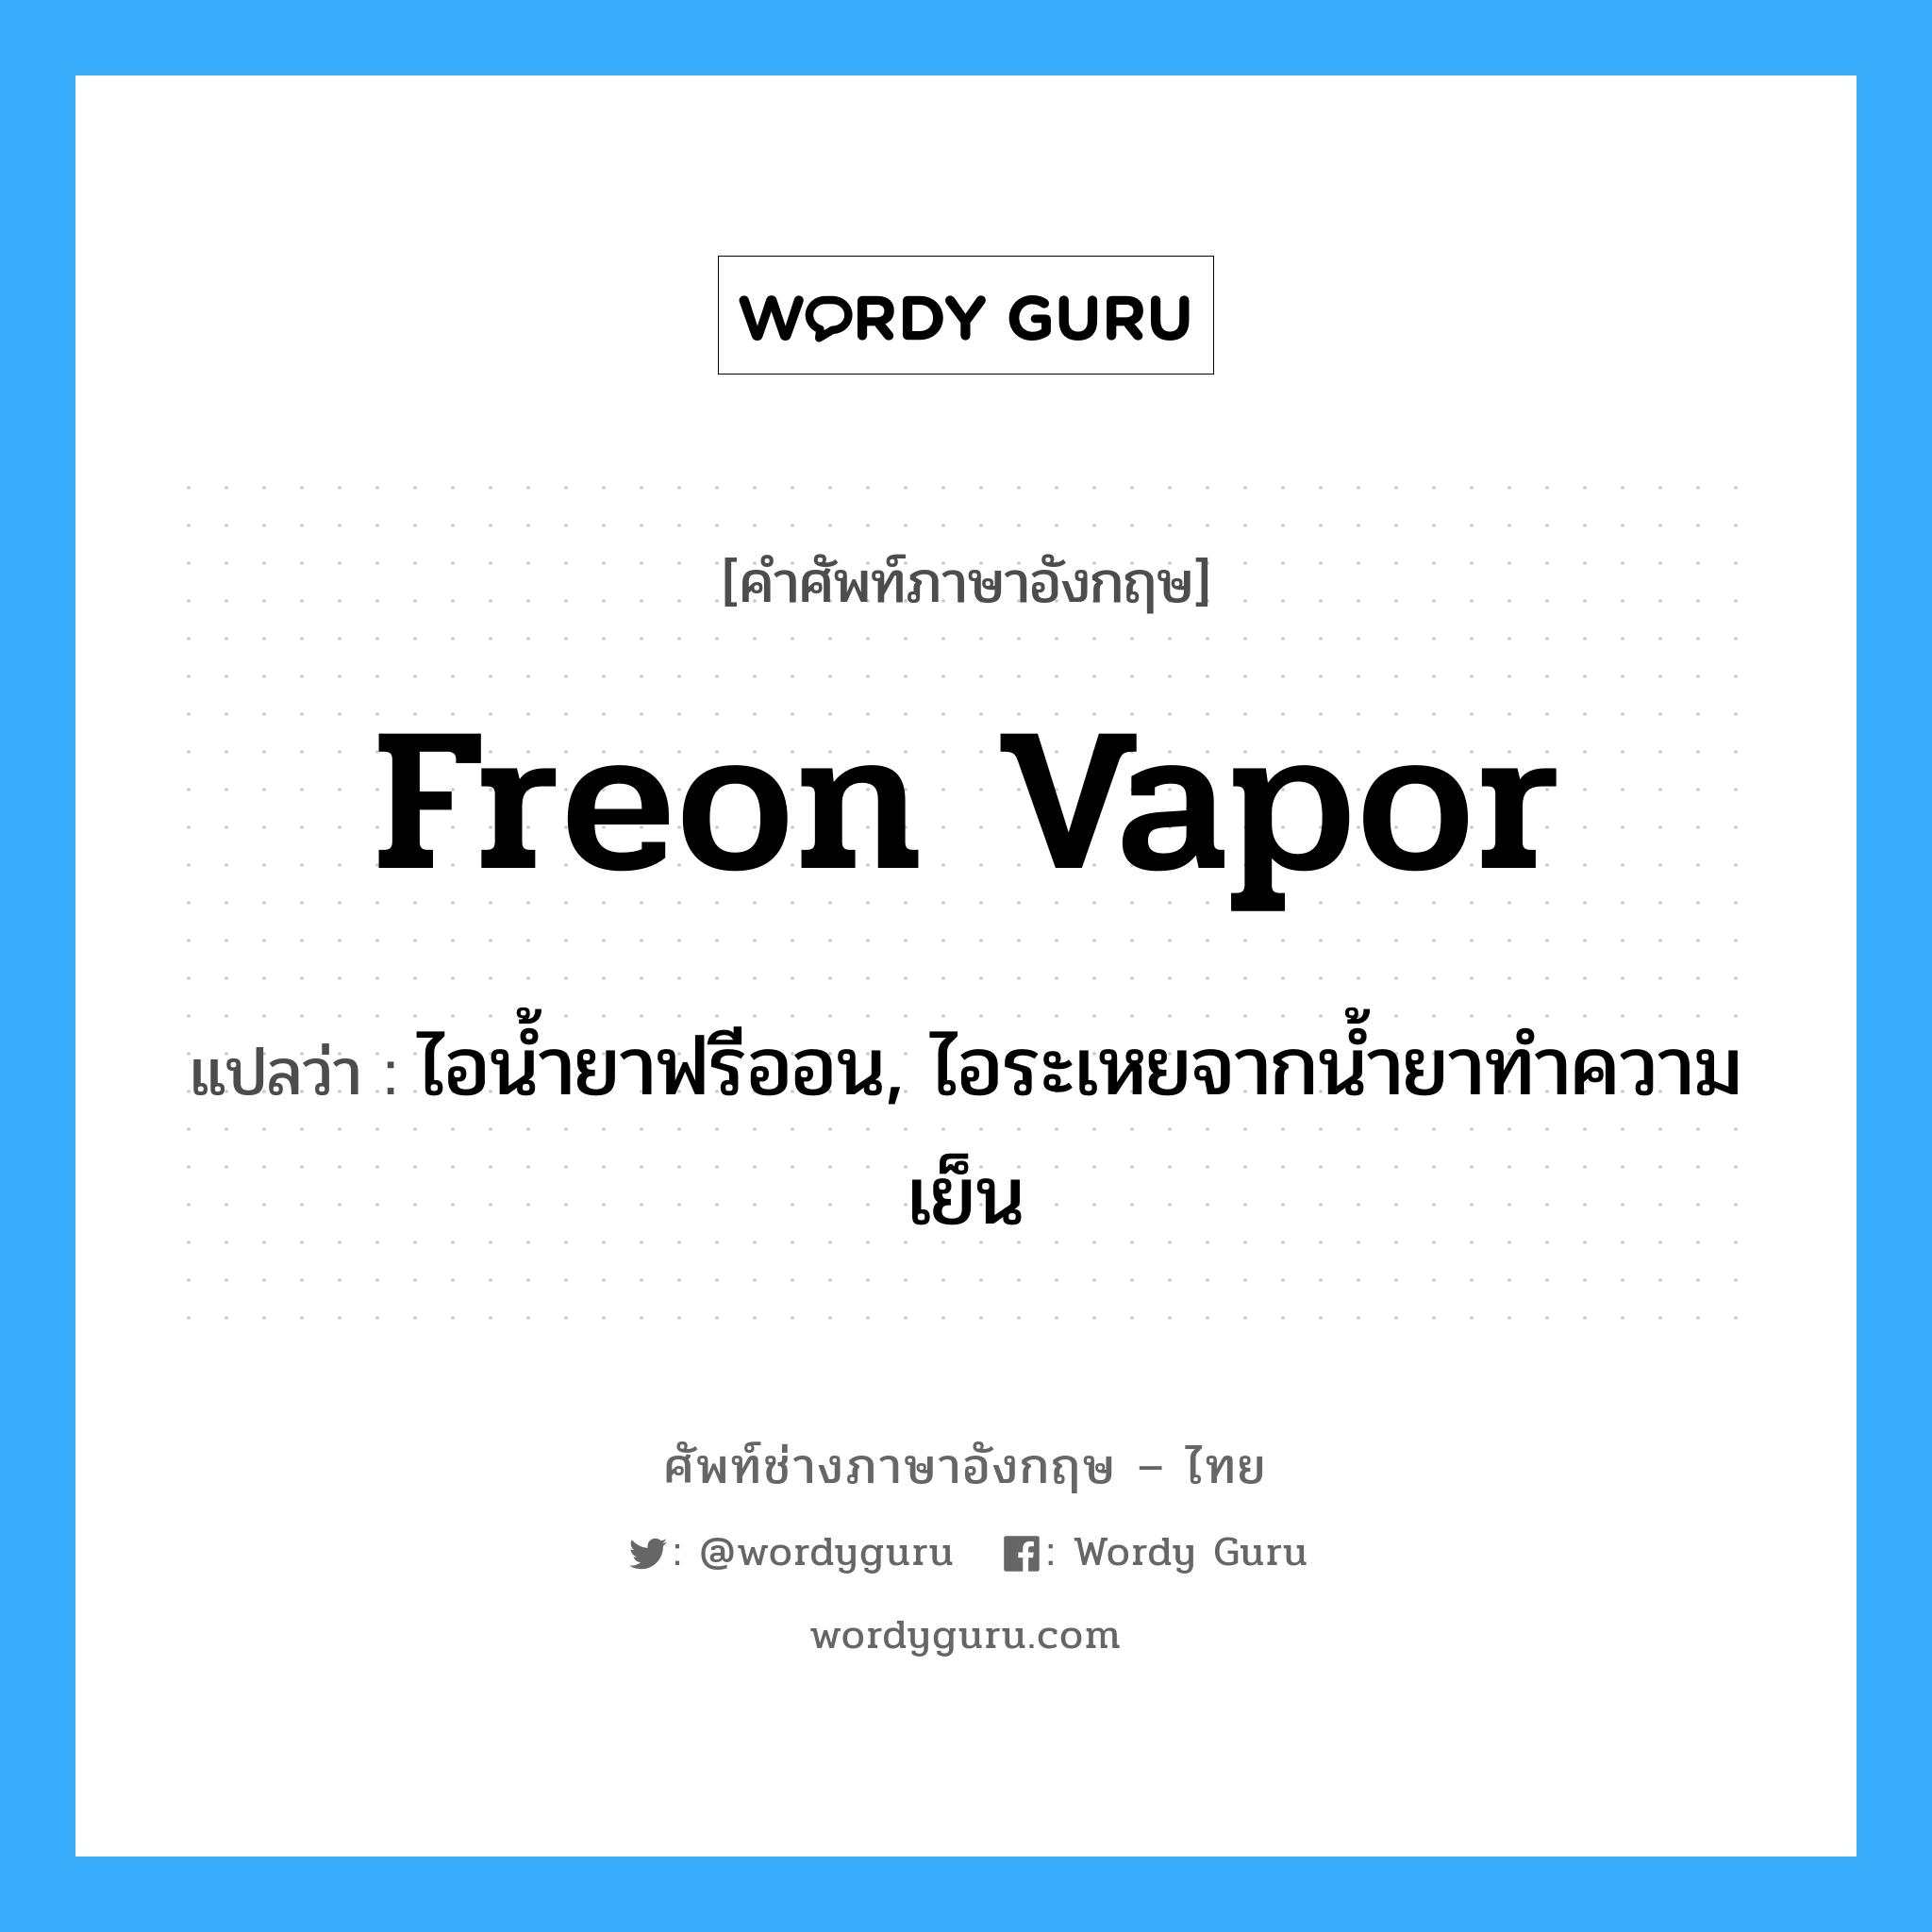 freon vapor แปลว่า?, คำศัพท์ช่างภาษาอังกฤษ - ไทย freon vapor คำศัพท์ภาษาอังกฤษ freon vapor แปลว่า ไอน้ำยาฟรีออน, ไอระเหยจากน้ำยาทำความเย็น